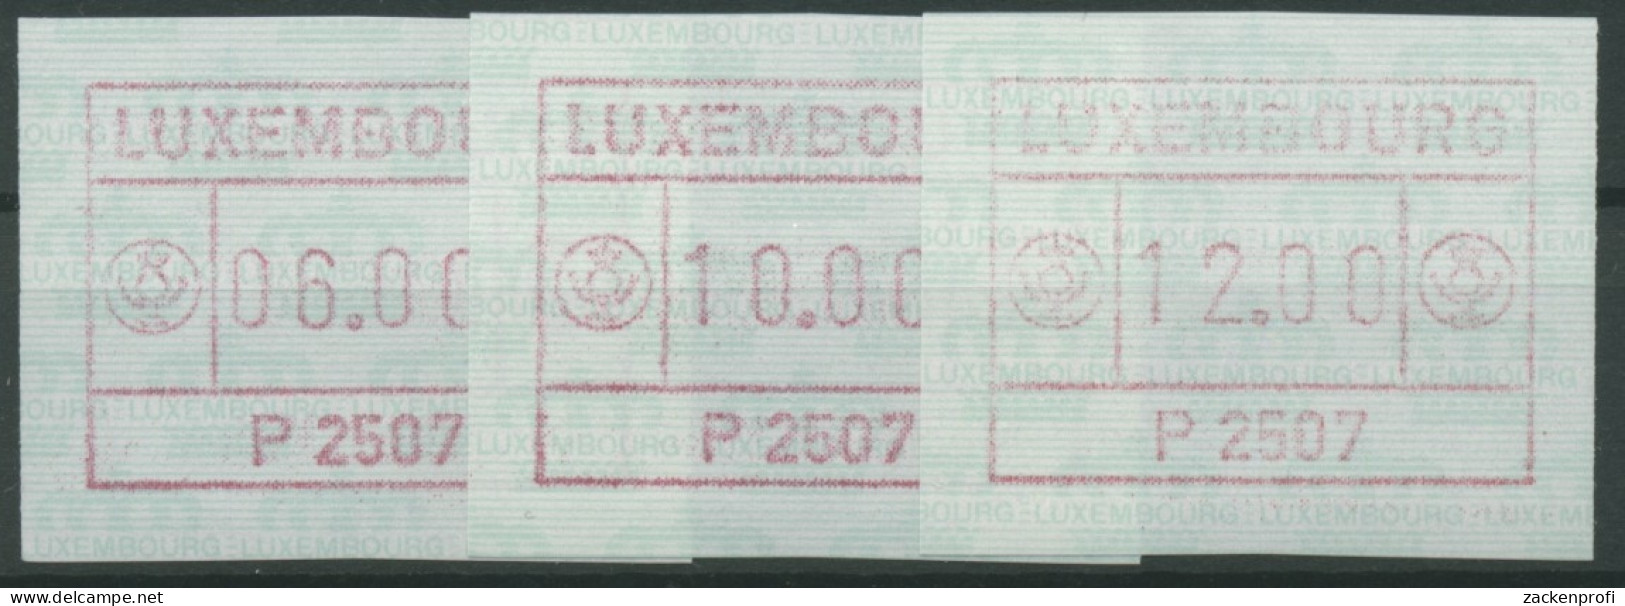 Luxemburg 1983 Automatenmarke 1 Satz 3 Werte Automat P2507 Postfrisch - Vignette